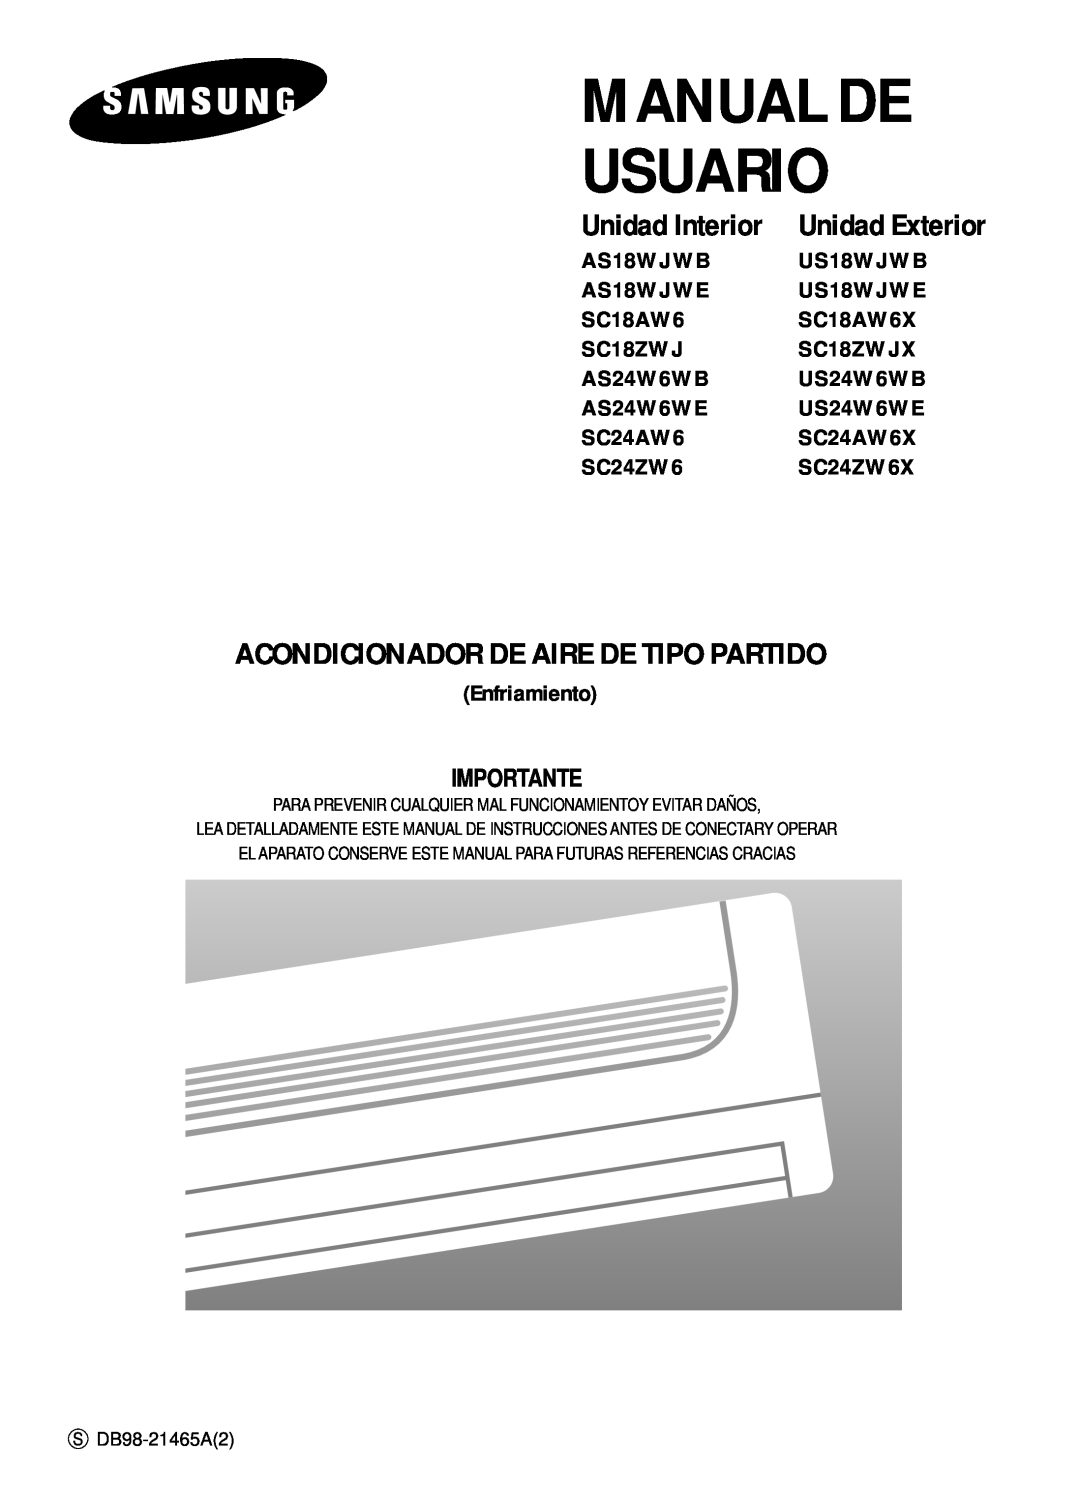 Samsung IAS24W6WE/AFR manual Unidad Exterior, Manual De Usuario, Acondicionador De Aire De Tipo Partido, Unidad Interior 